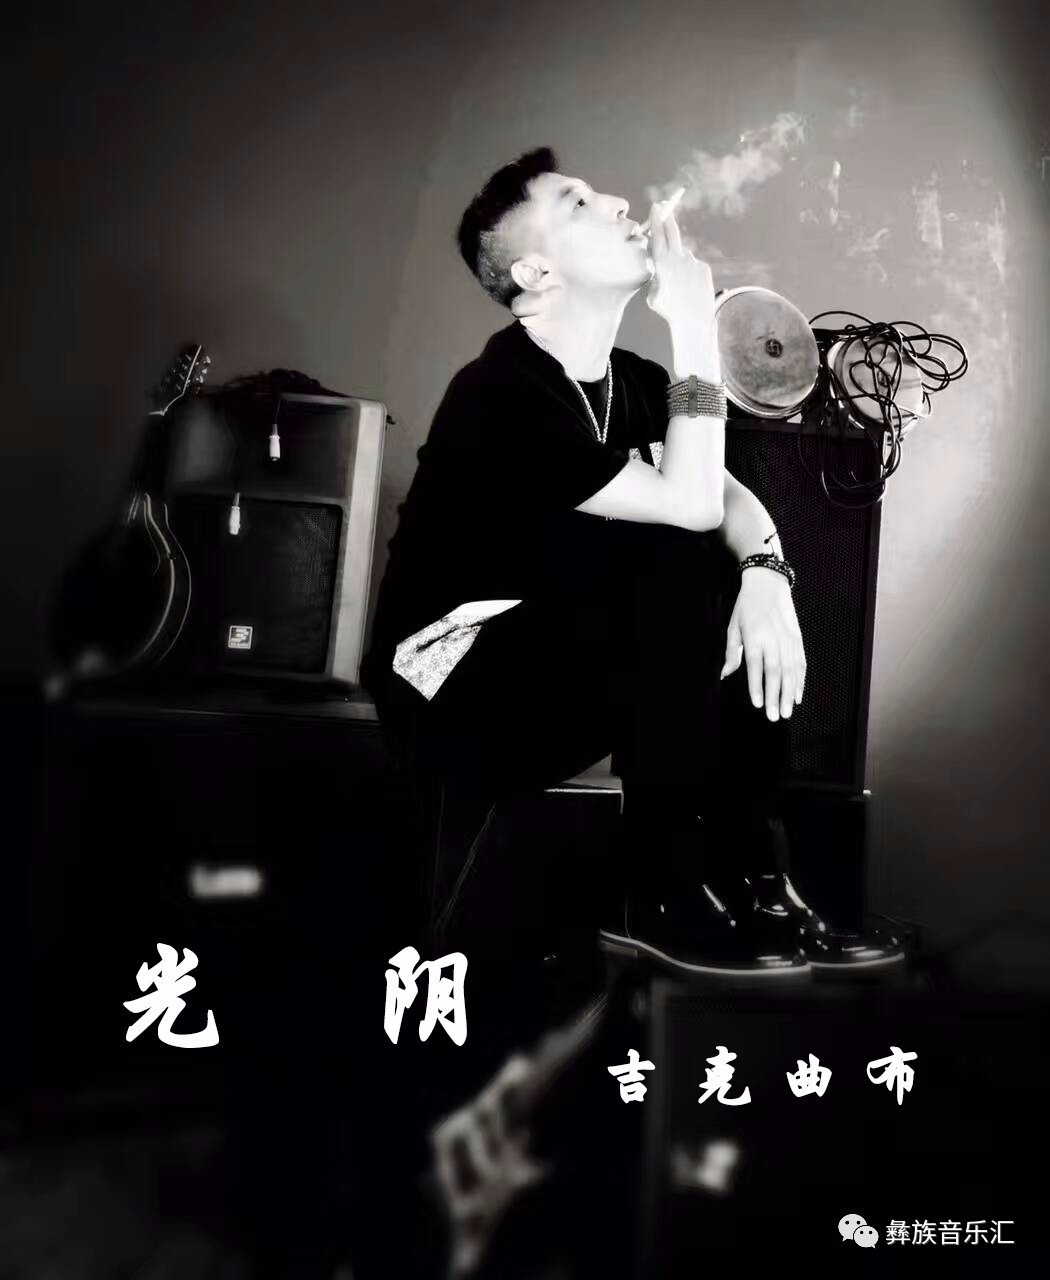 彝族流行音乐教父吉克曲布发布新歌《光阴》,老炮的心声你能懂?